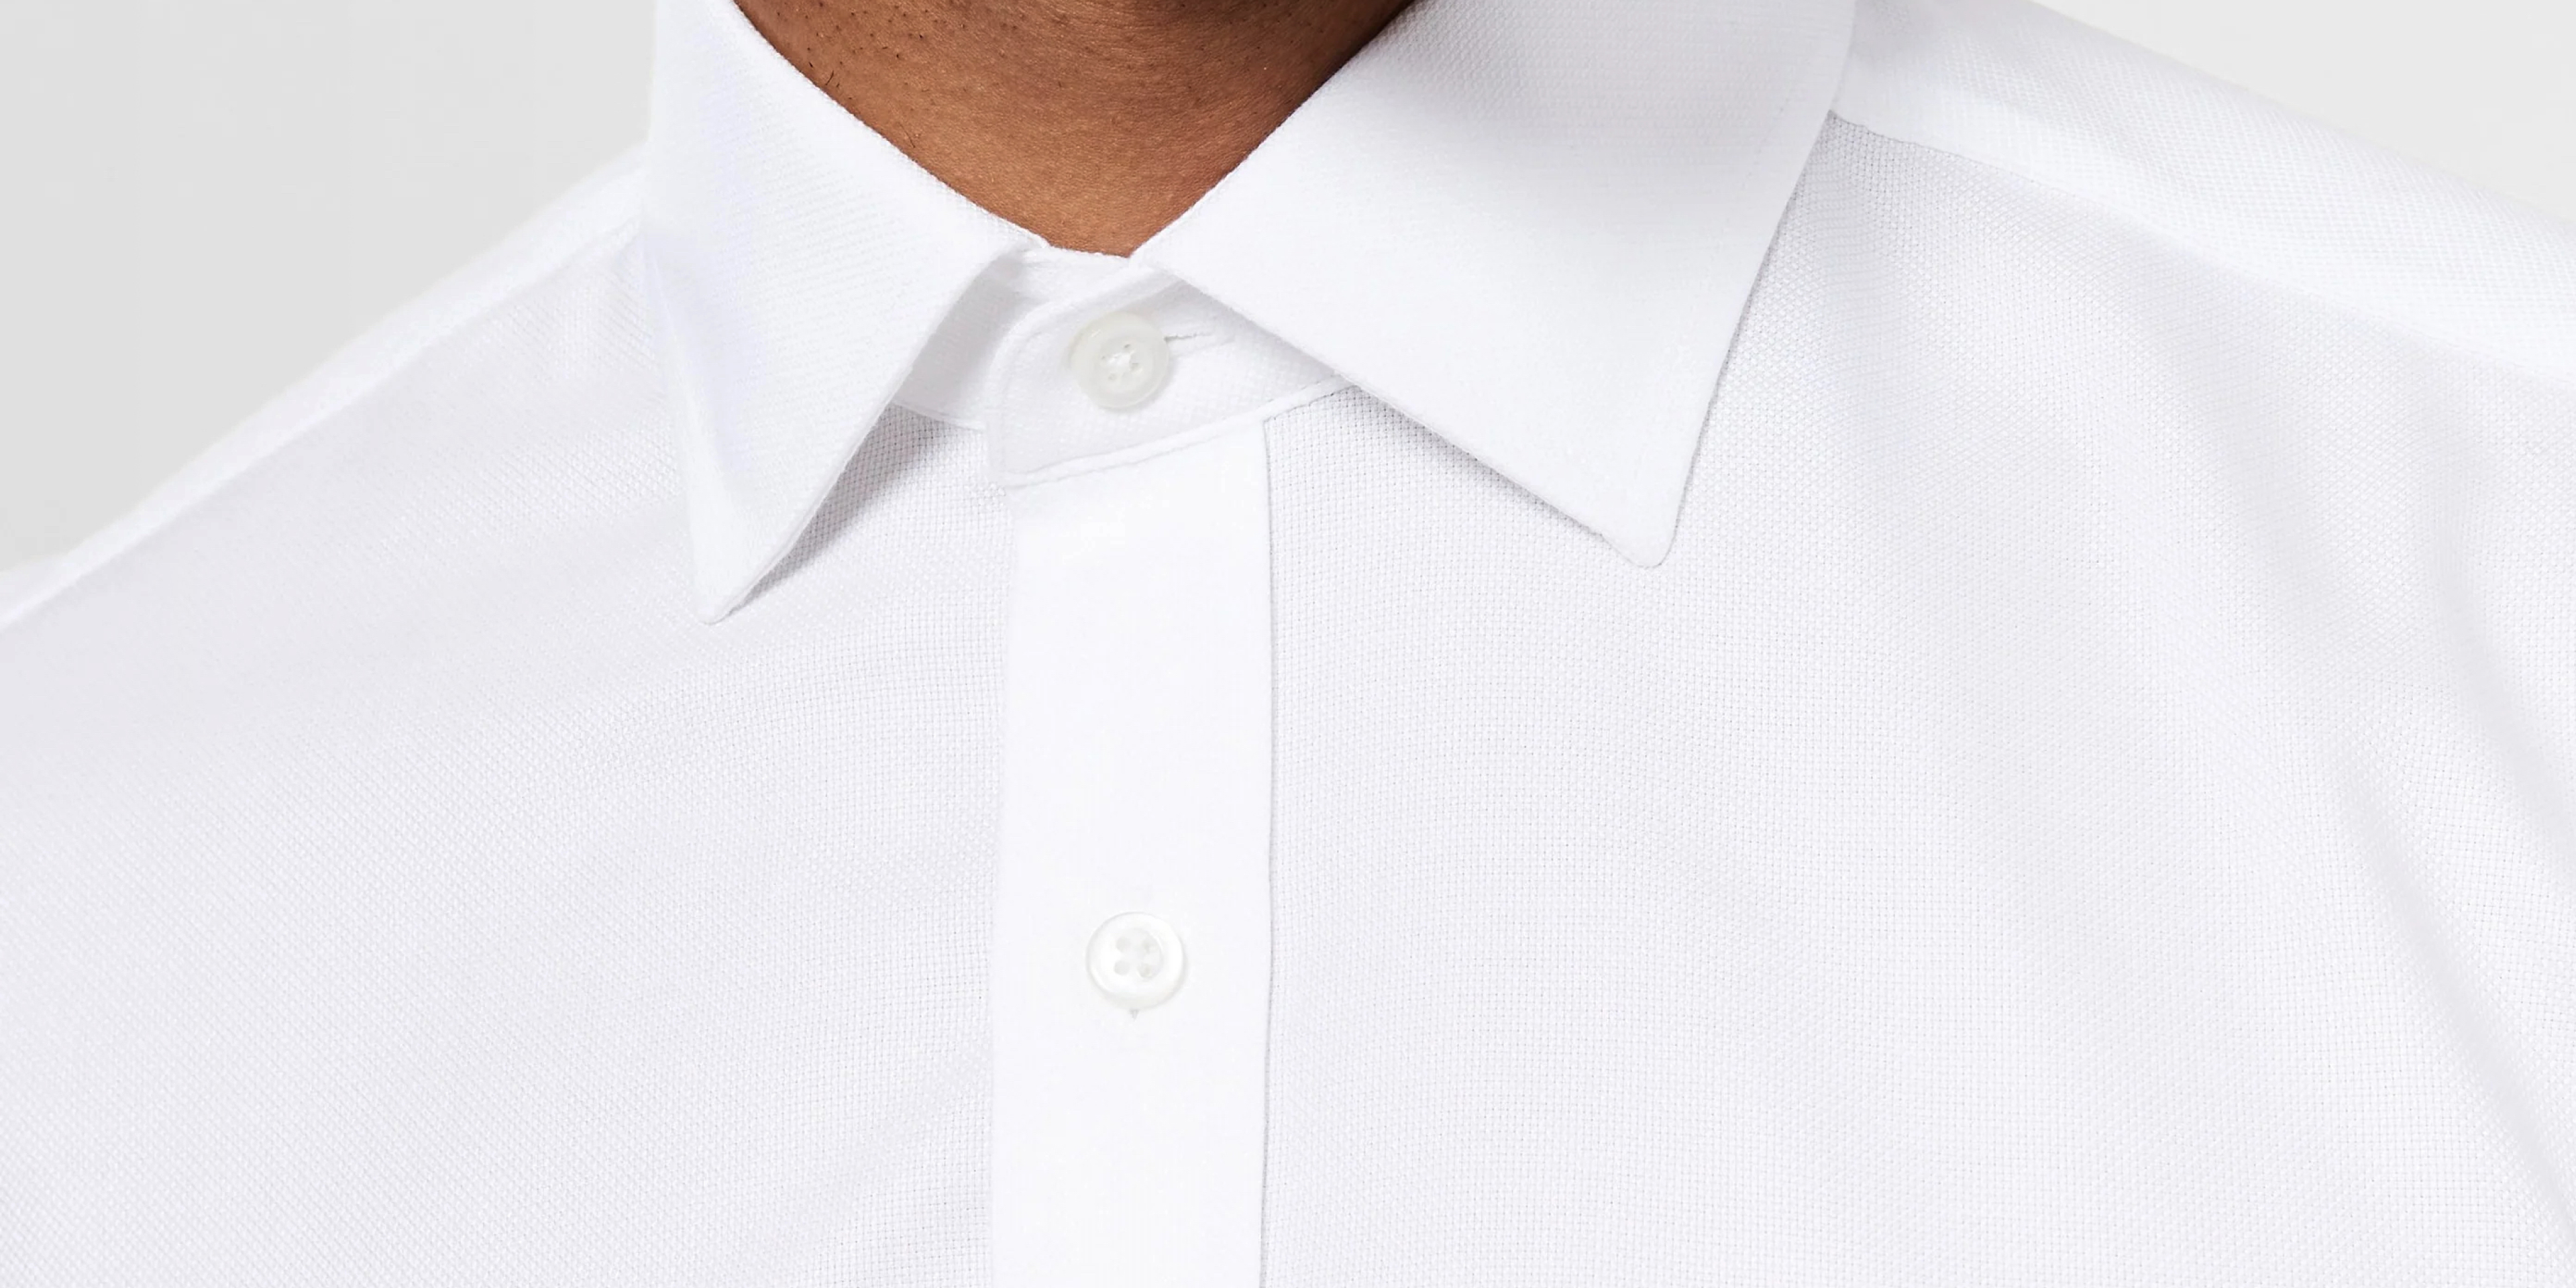 A Non-Iron White Shirt